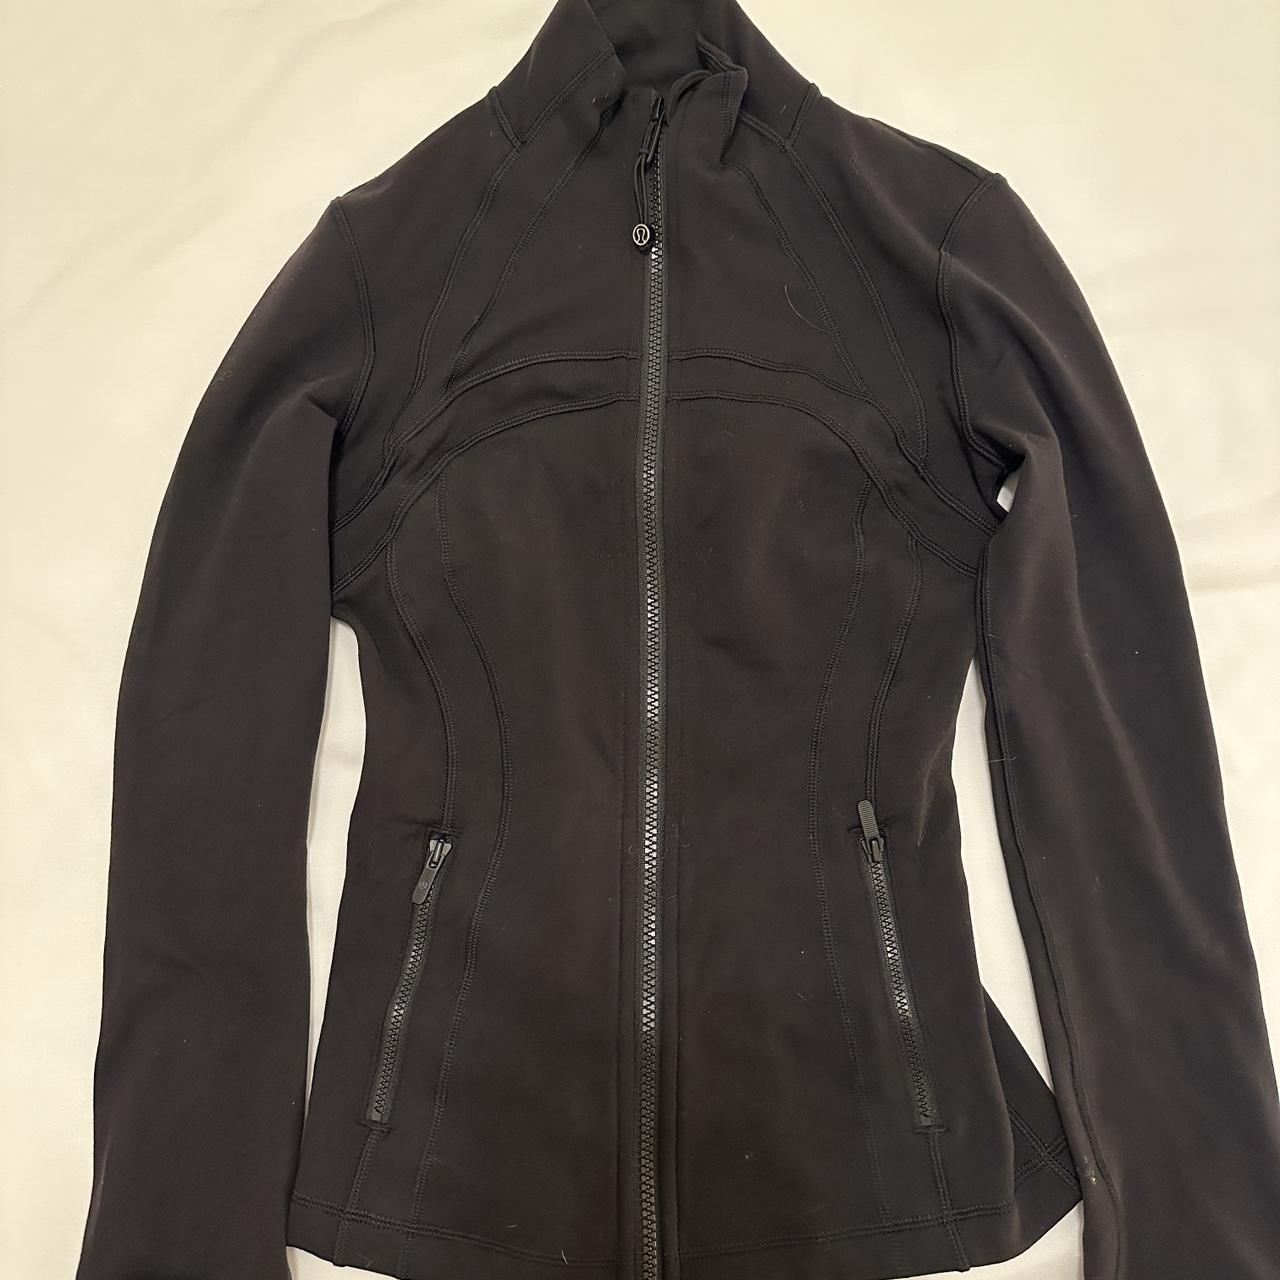 lululemon black define jacket size 0 worn a few... - Depop